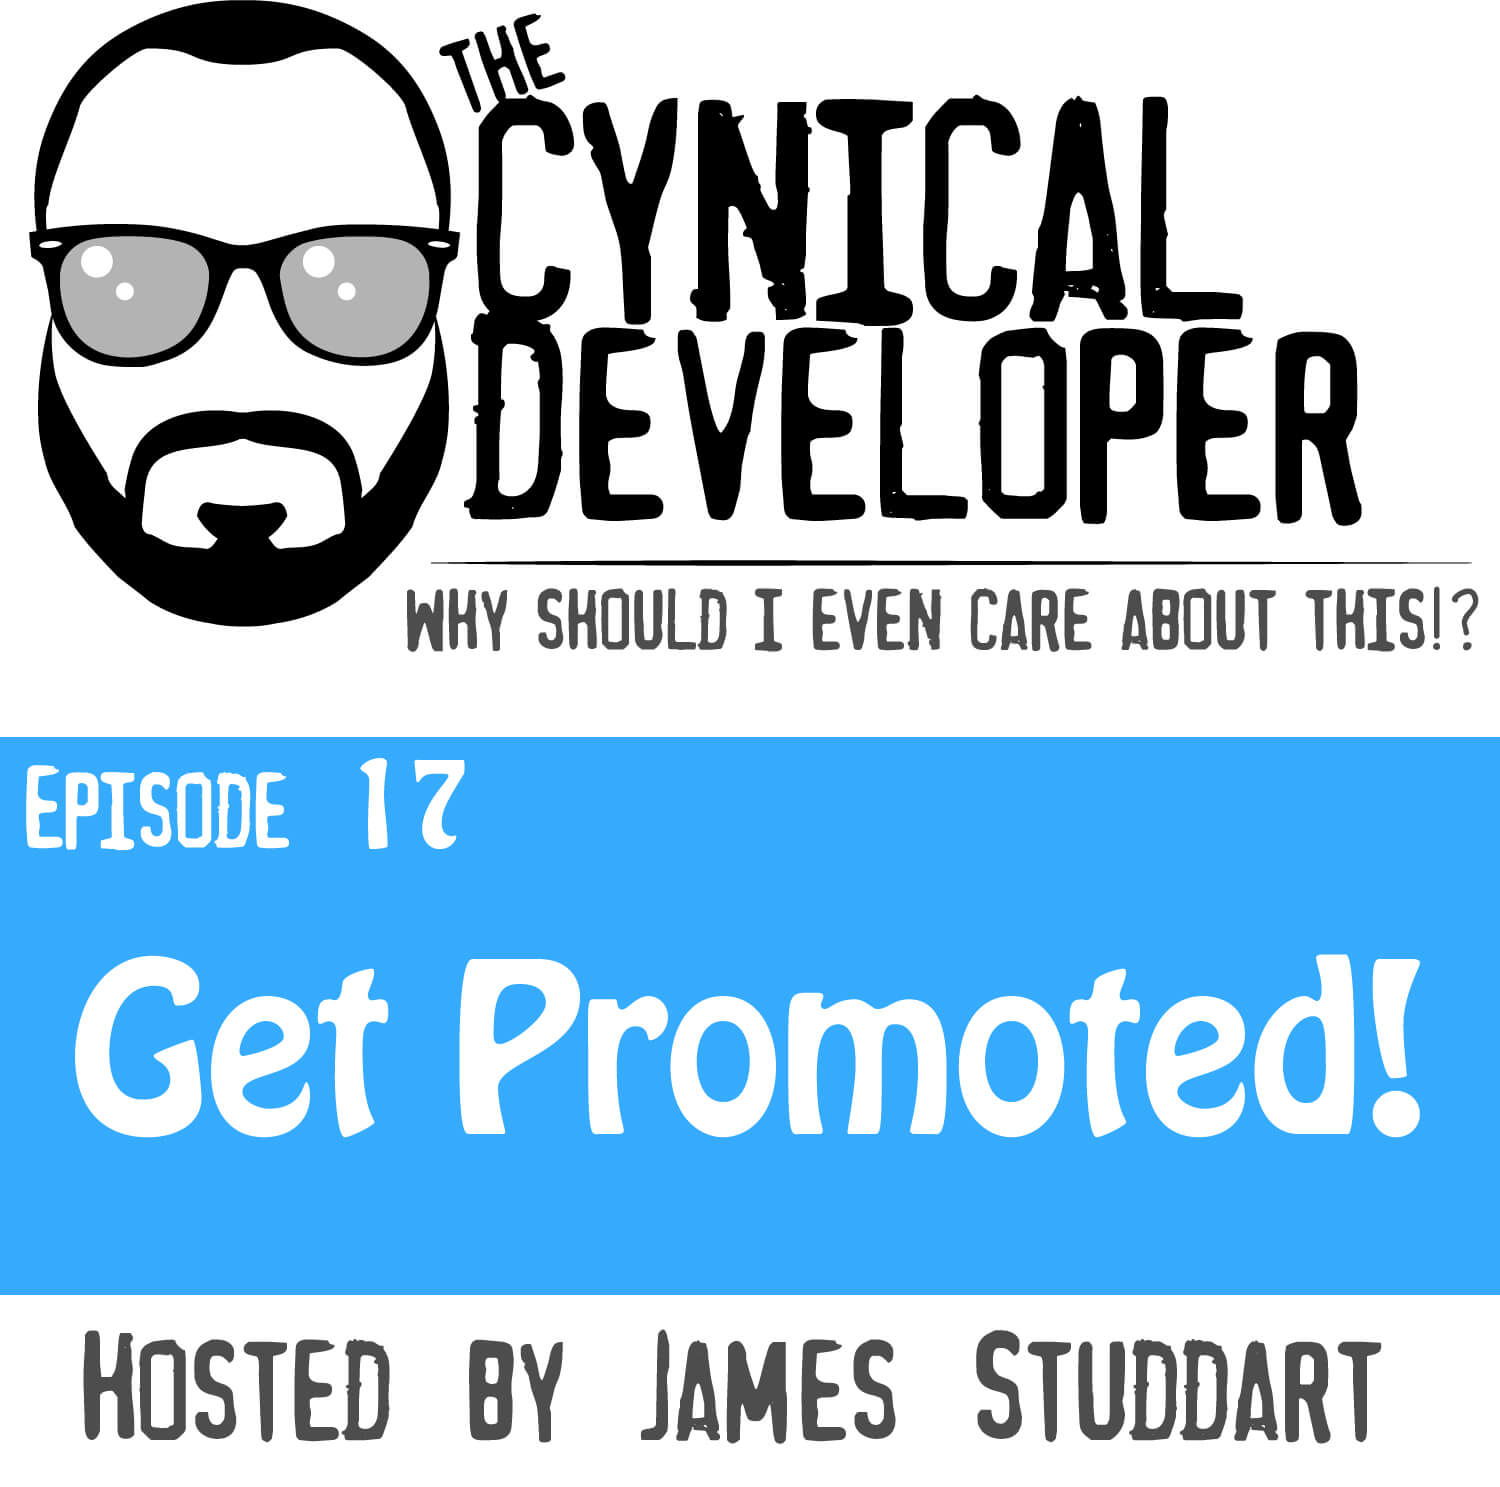 Episode 17 - Get Promoted!